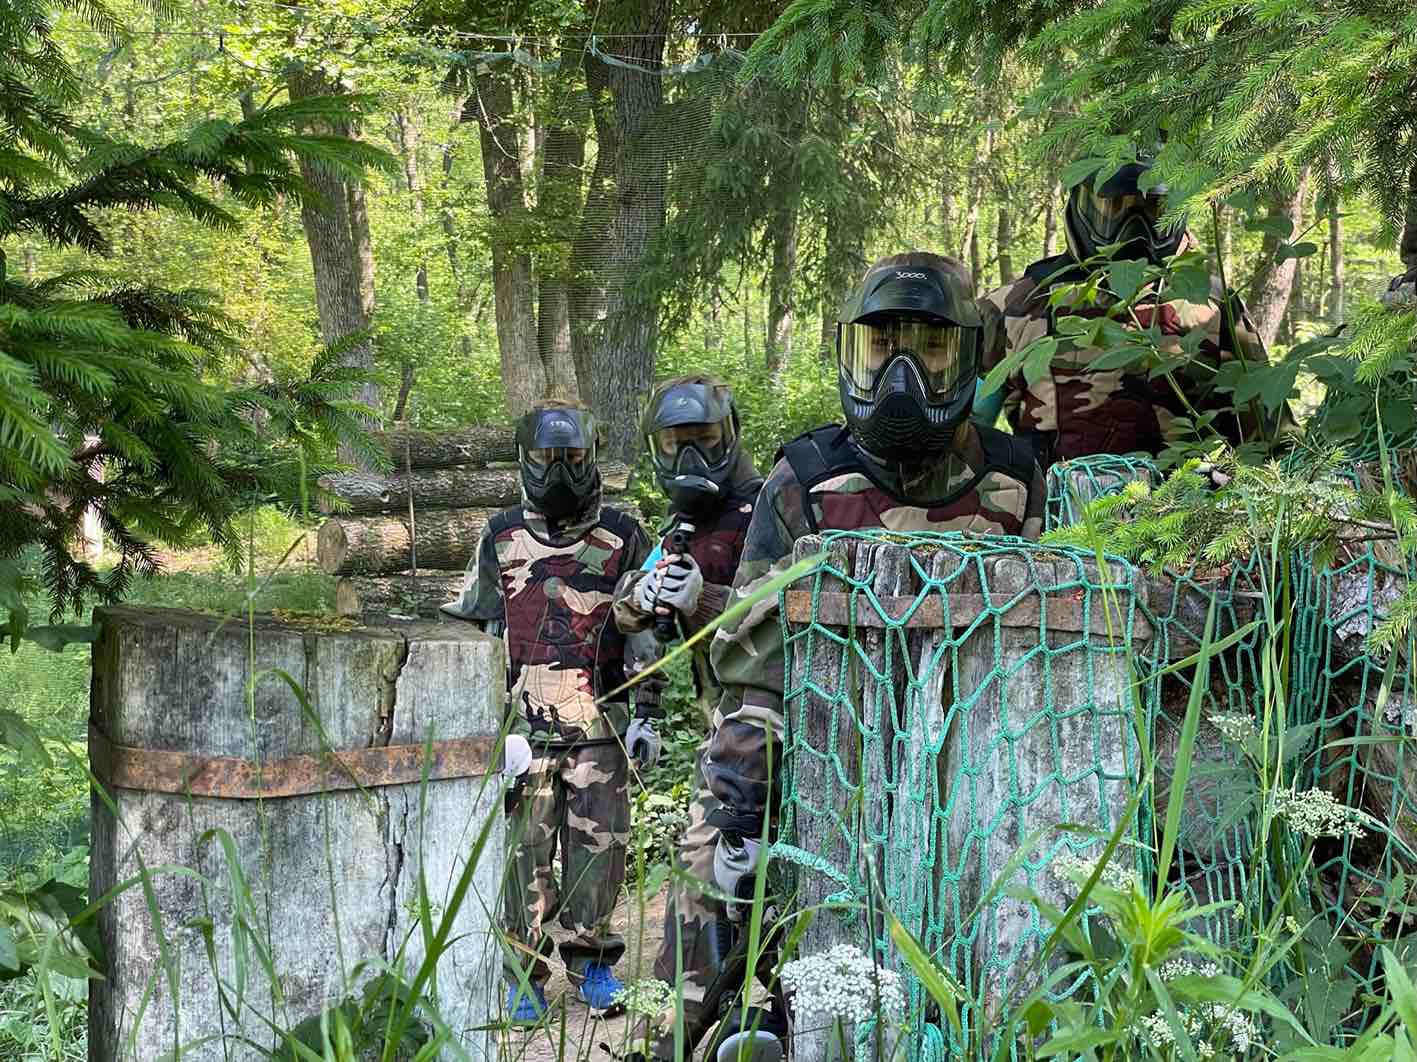 Paintball Park Spyder ekipa 4 fantov, ki se v poligonu skrivajo pred napadalci. oblečeni so v kamuflažno obleko in nosijo zaščitno masko na obrazu